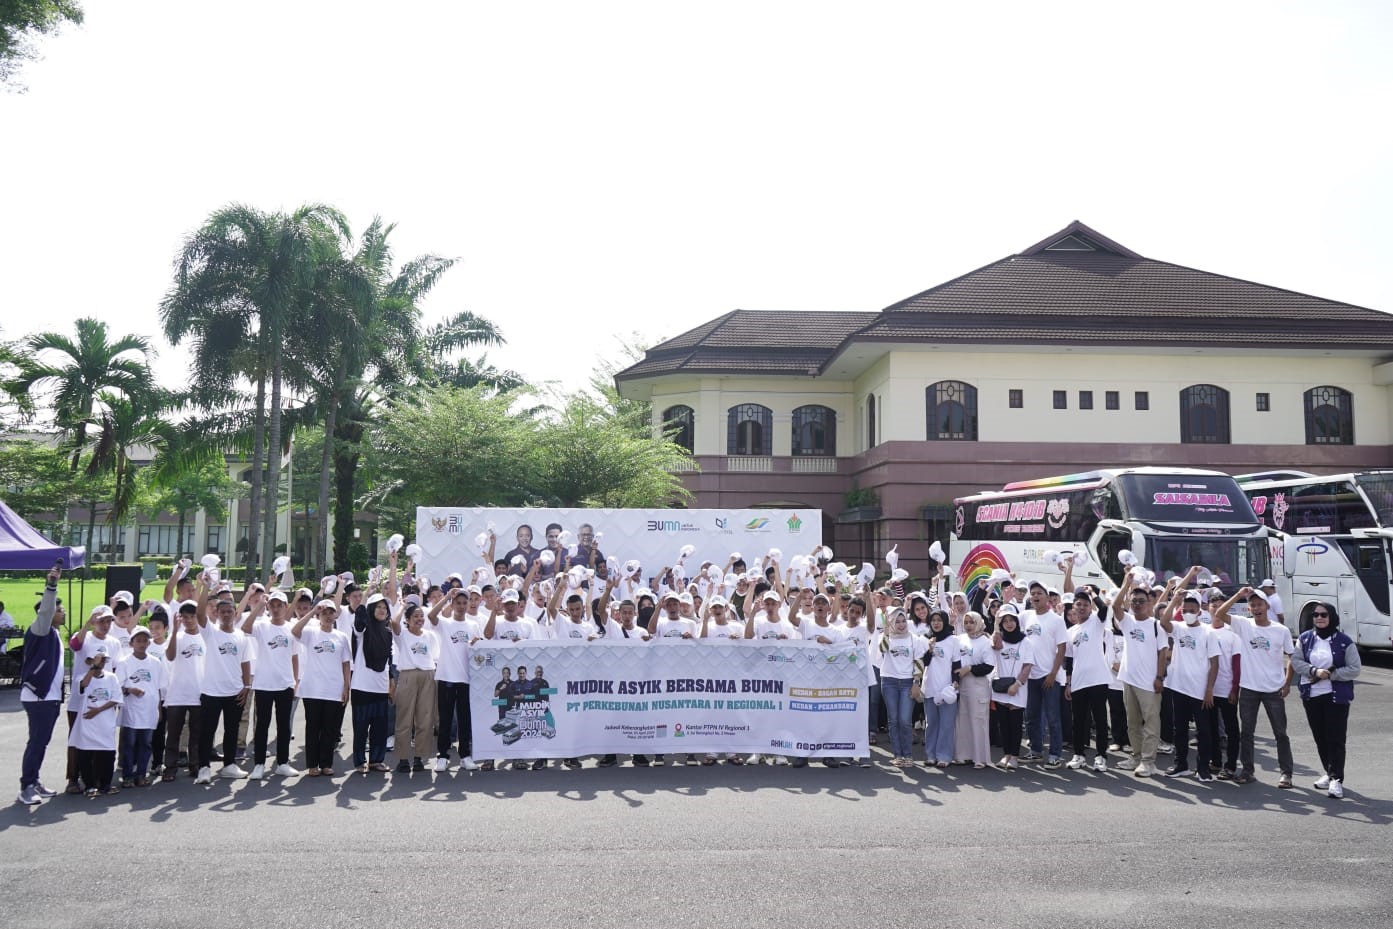 Mudik Gratis BUMN PalmCo Regional 1 PTPN IV Berangkatkan 500 Pemudik ke Tujuh Kota di Sumatra